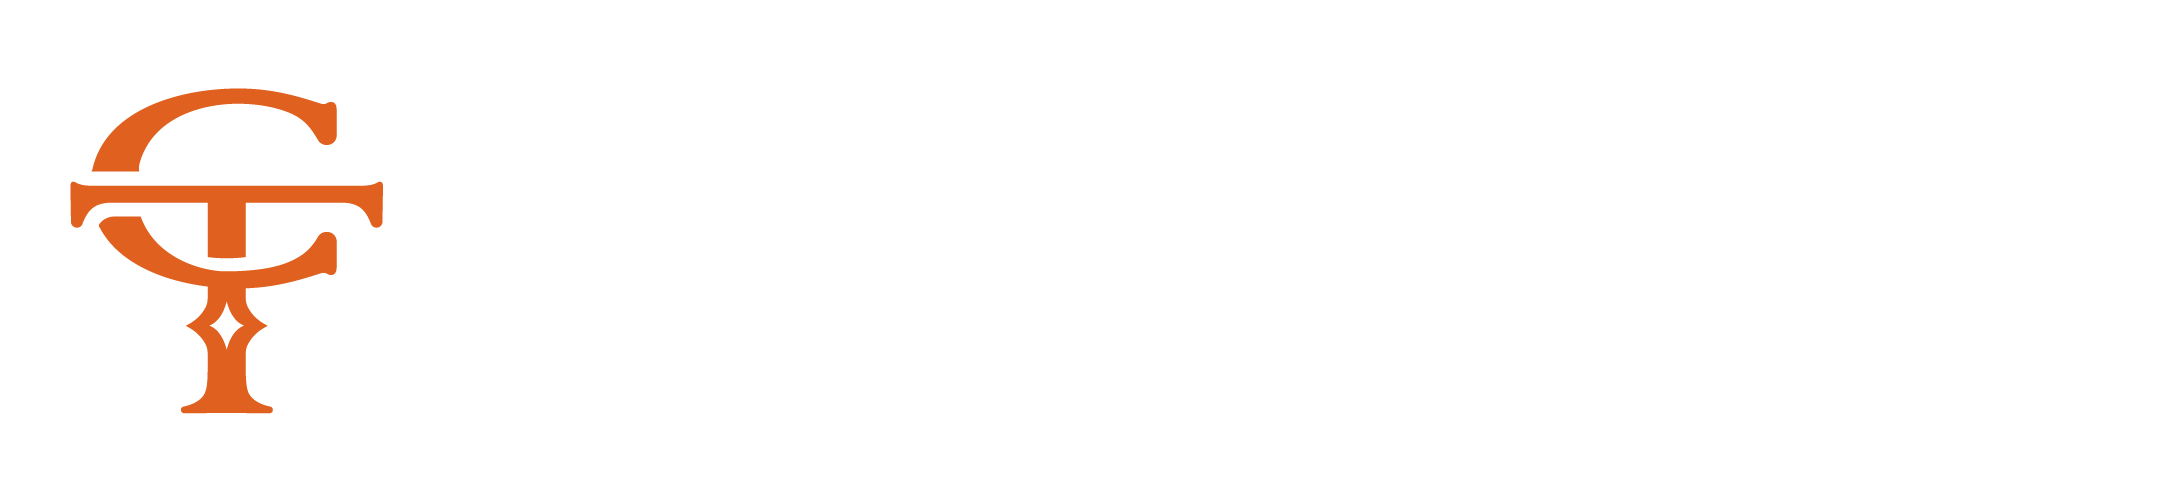 Cross Trailers, LLC